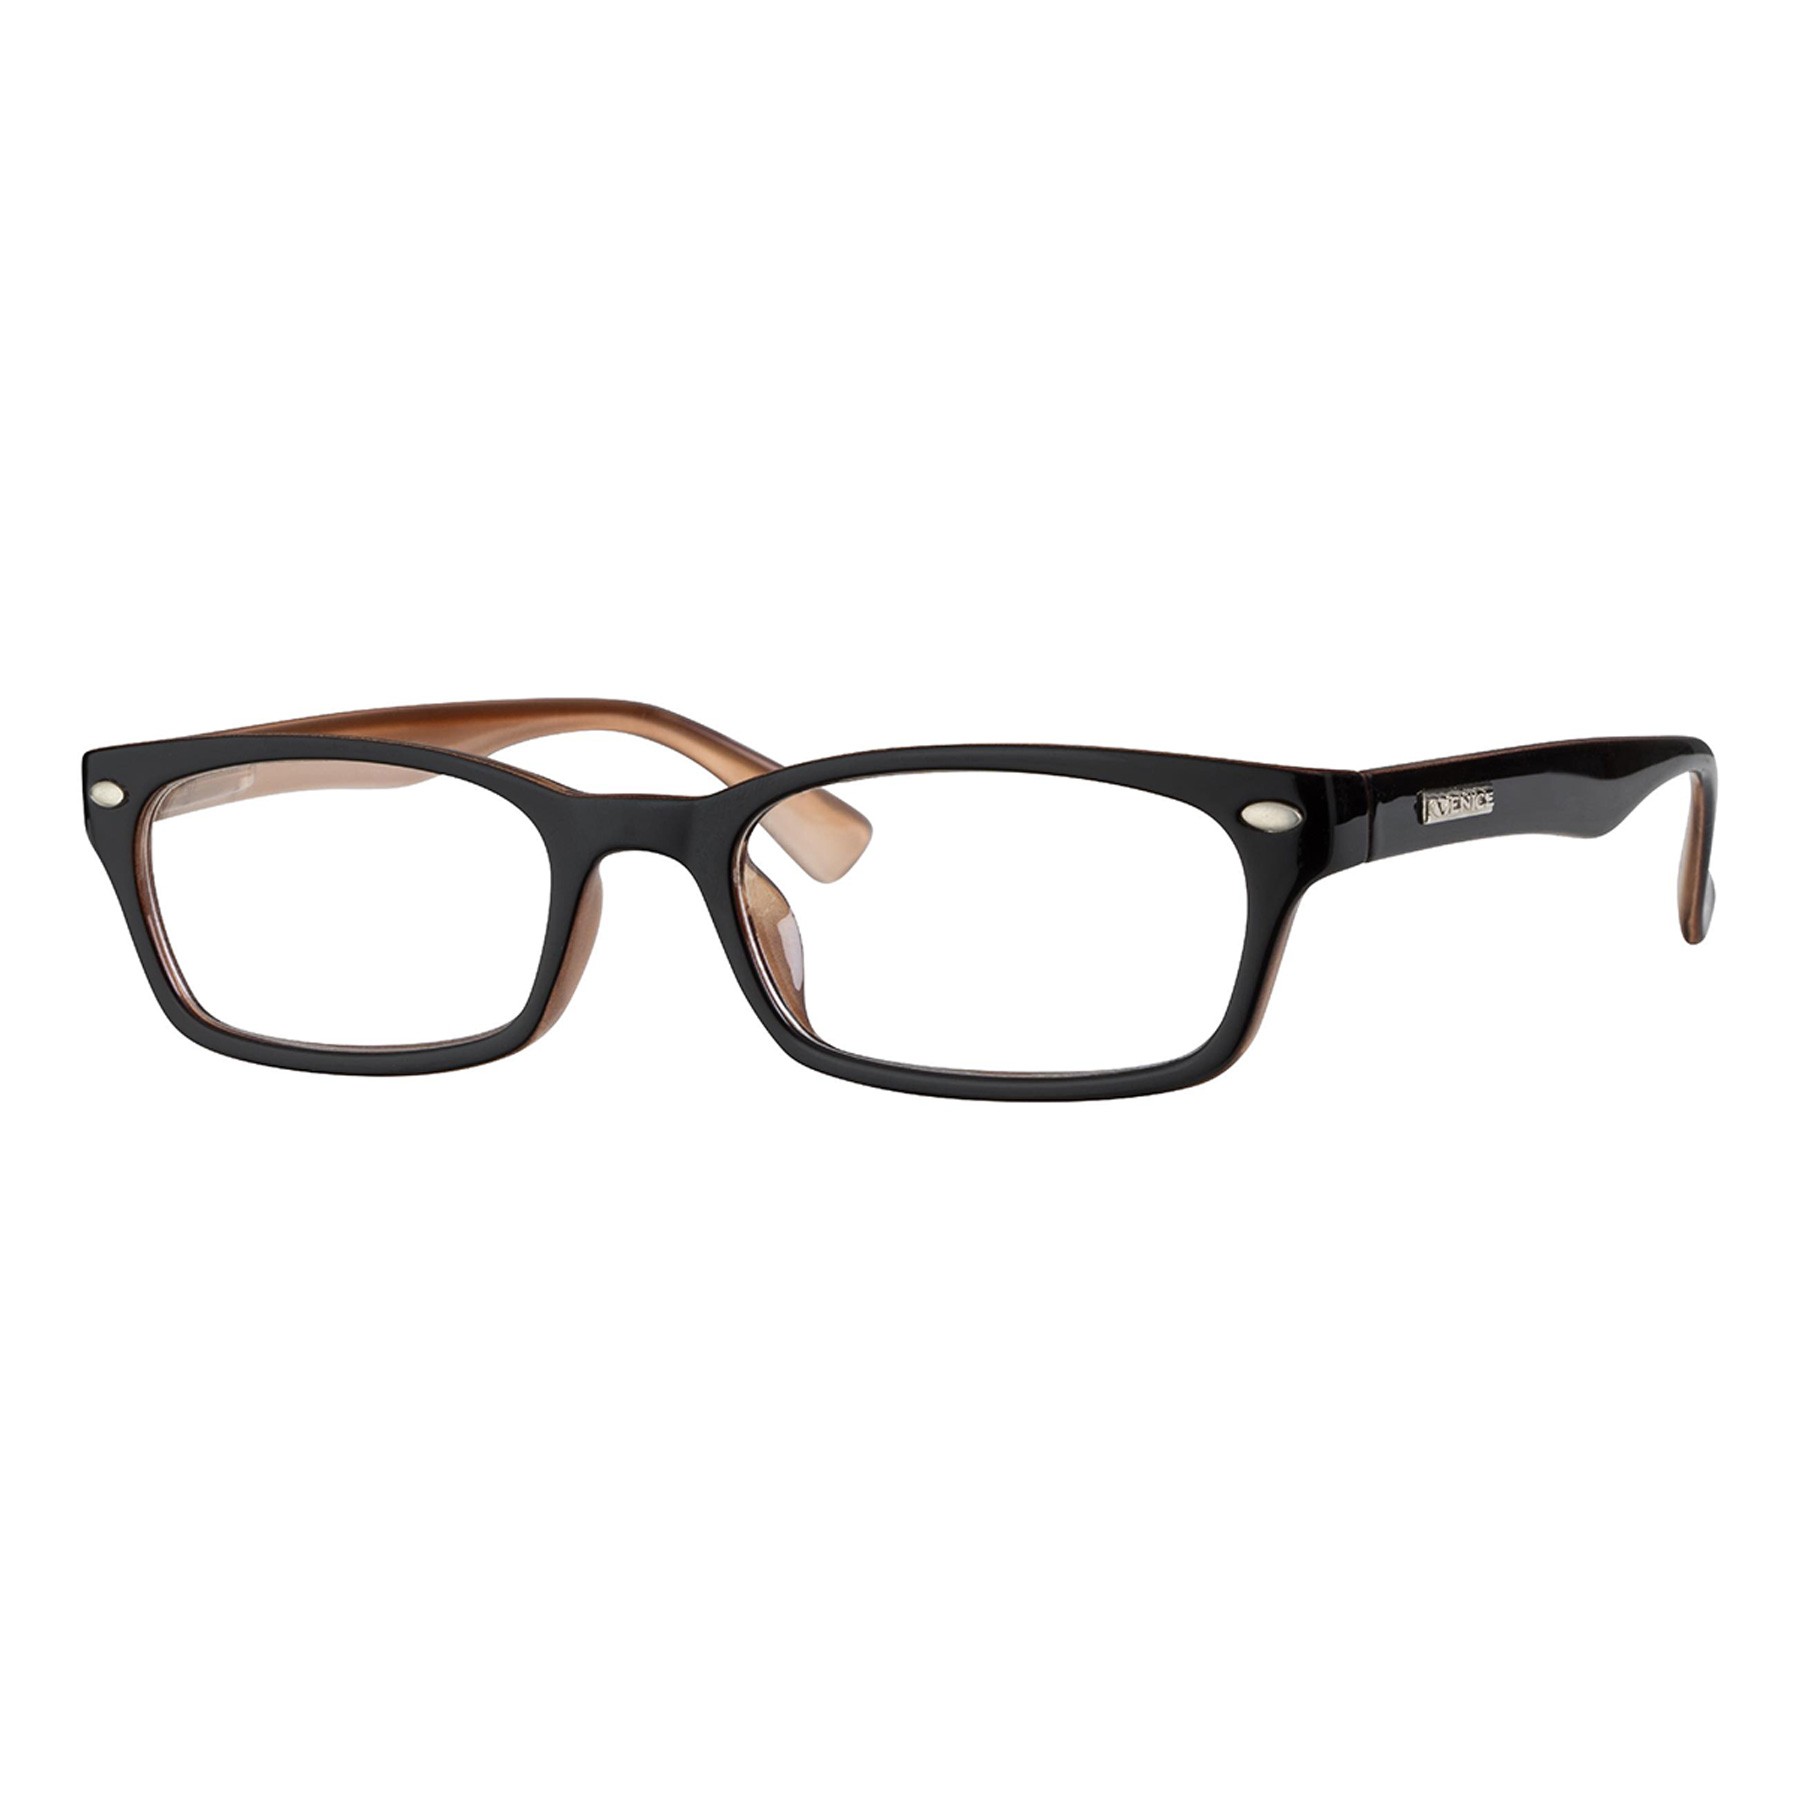 Iaview gafa de presbicia mini WAY marrón +2,50